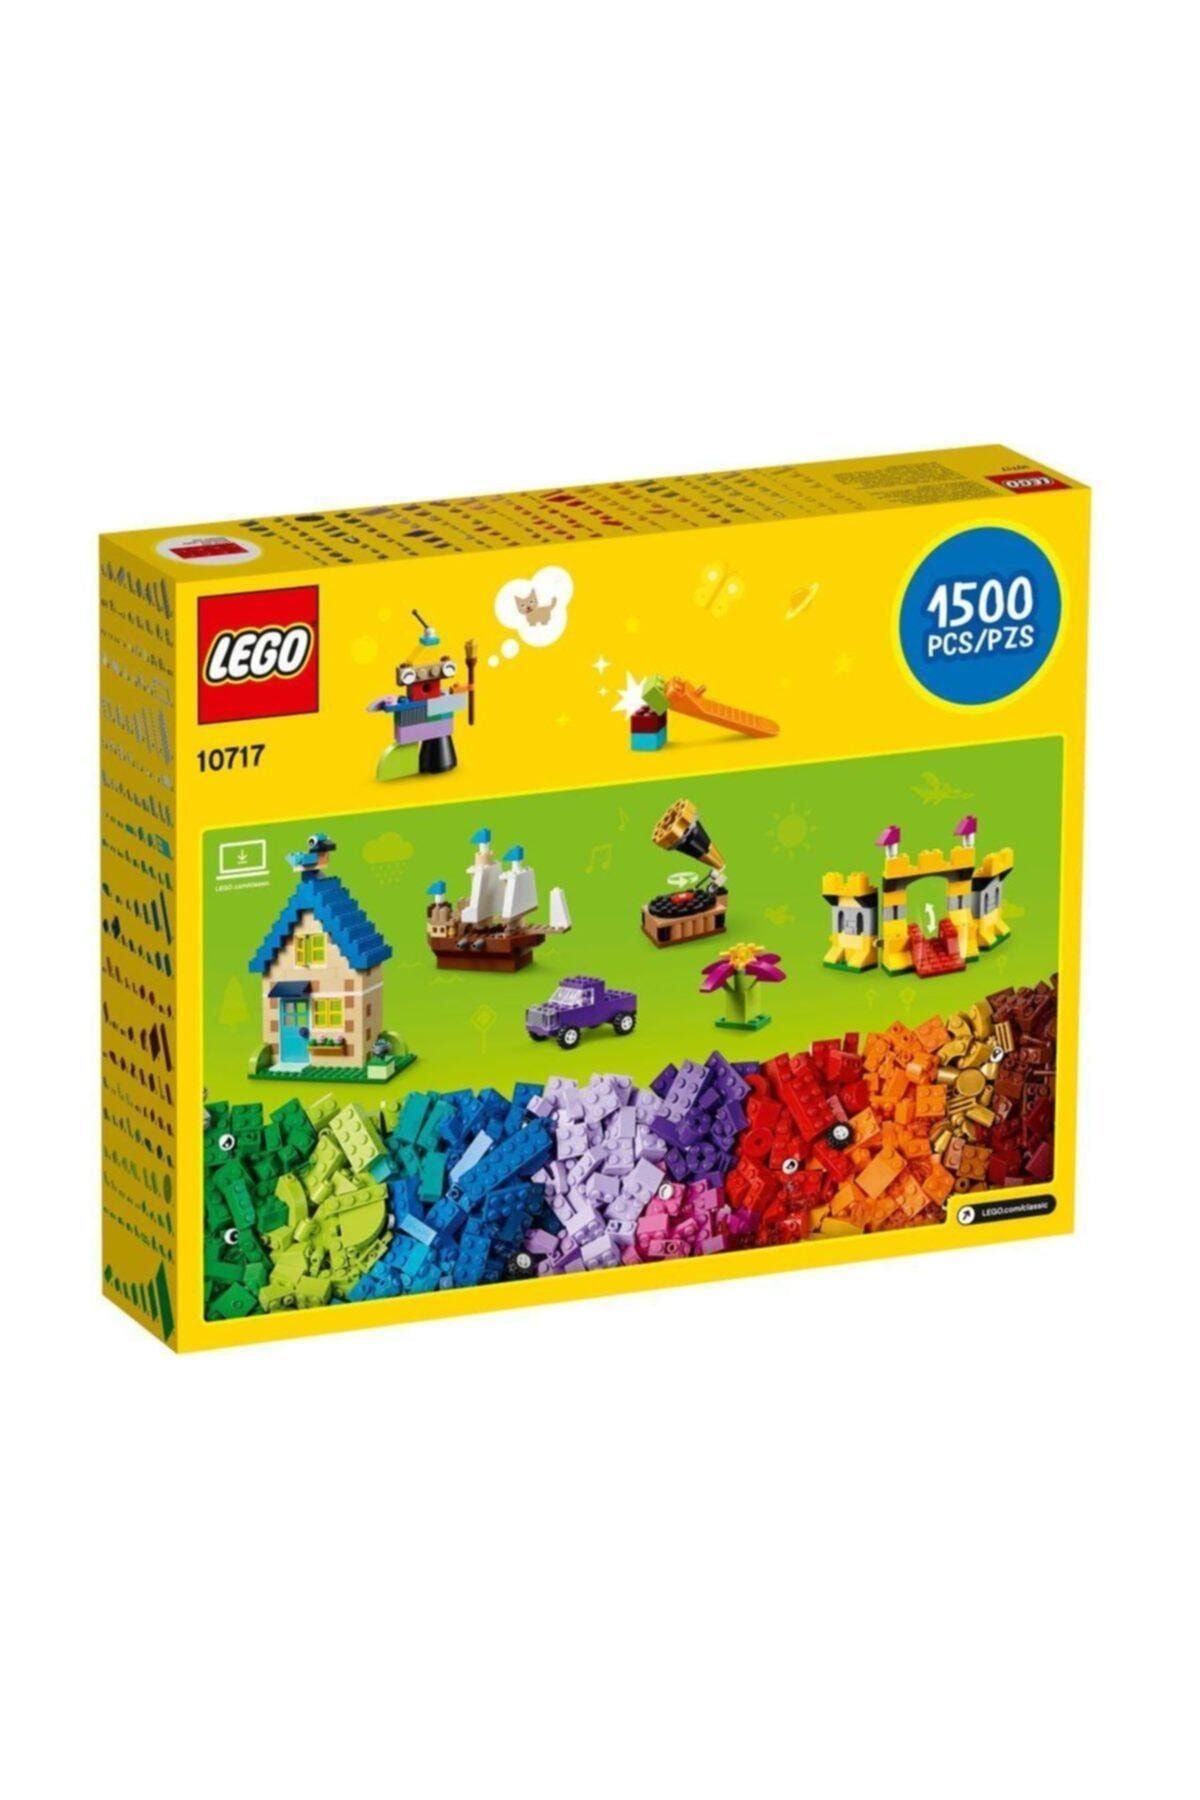 LEGO Classic 10717 Extra Large Brick Box